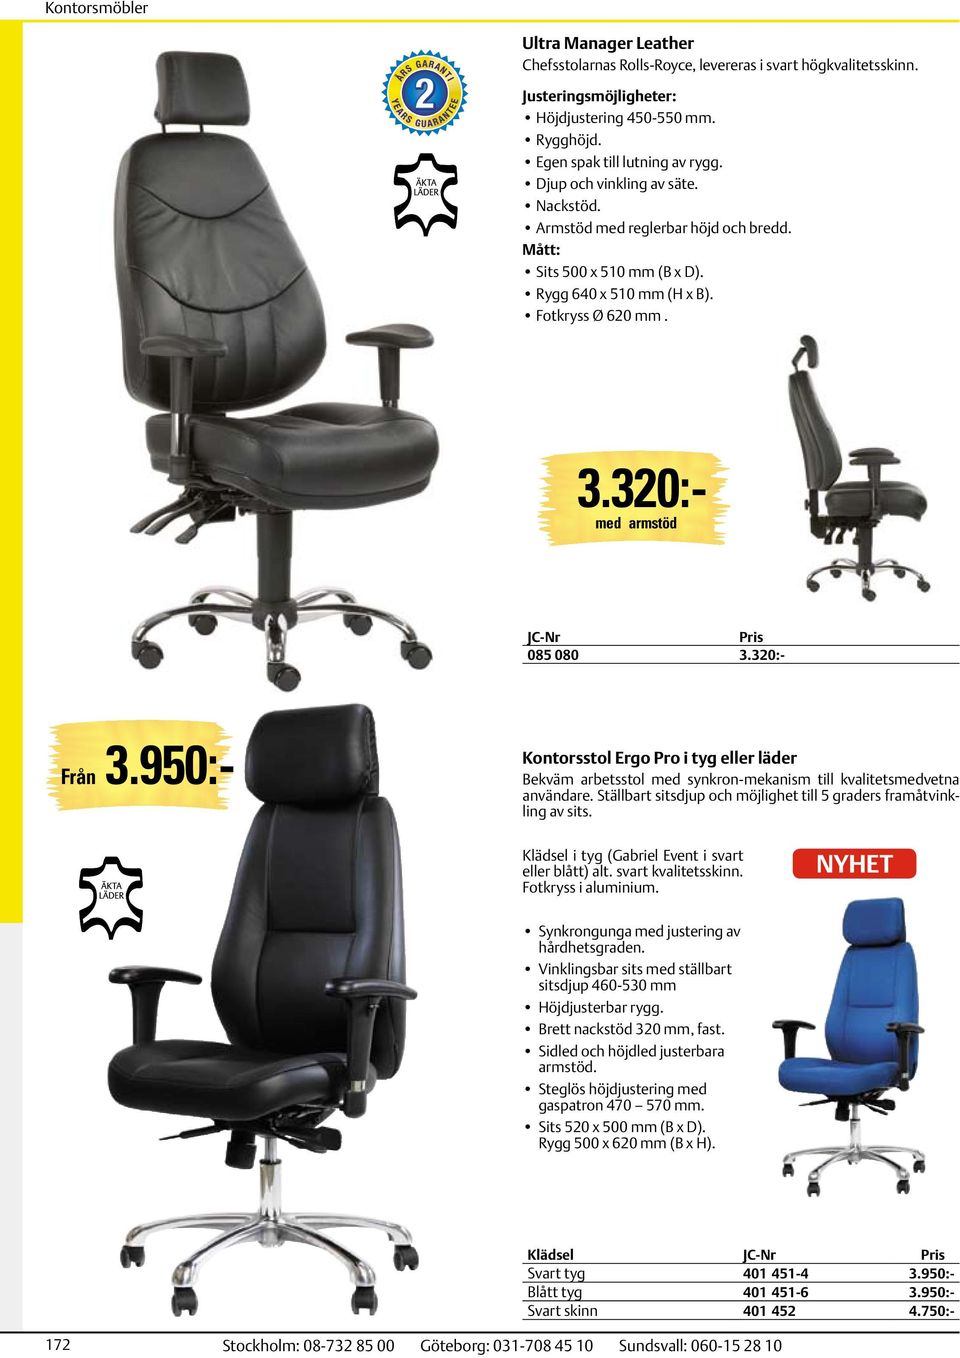 950:- Kontorsstol Ergo Pro i tyg eller läder Bekväm arbetsstol med synkron-mekanism till kvalitetsmedvetna användare. Ställbart sitsdjup och möjlighet till 5 graders framåtvinkling av sits.